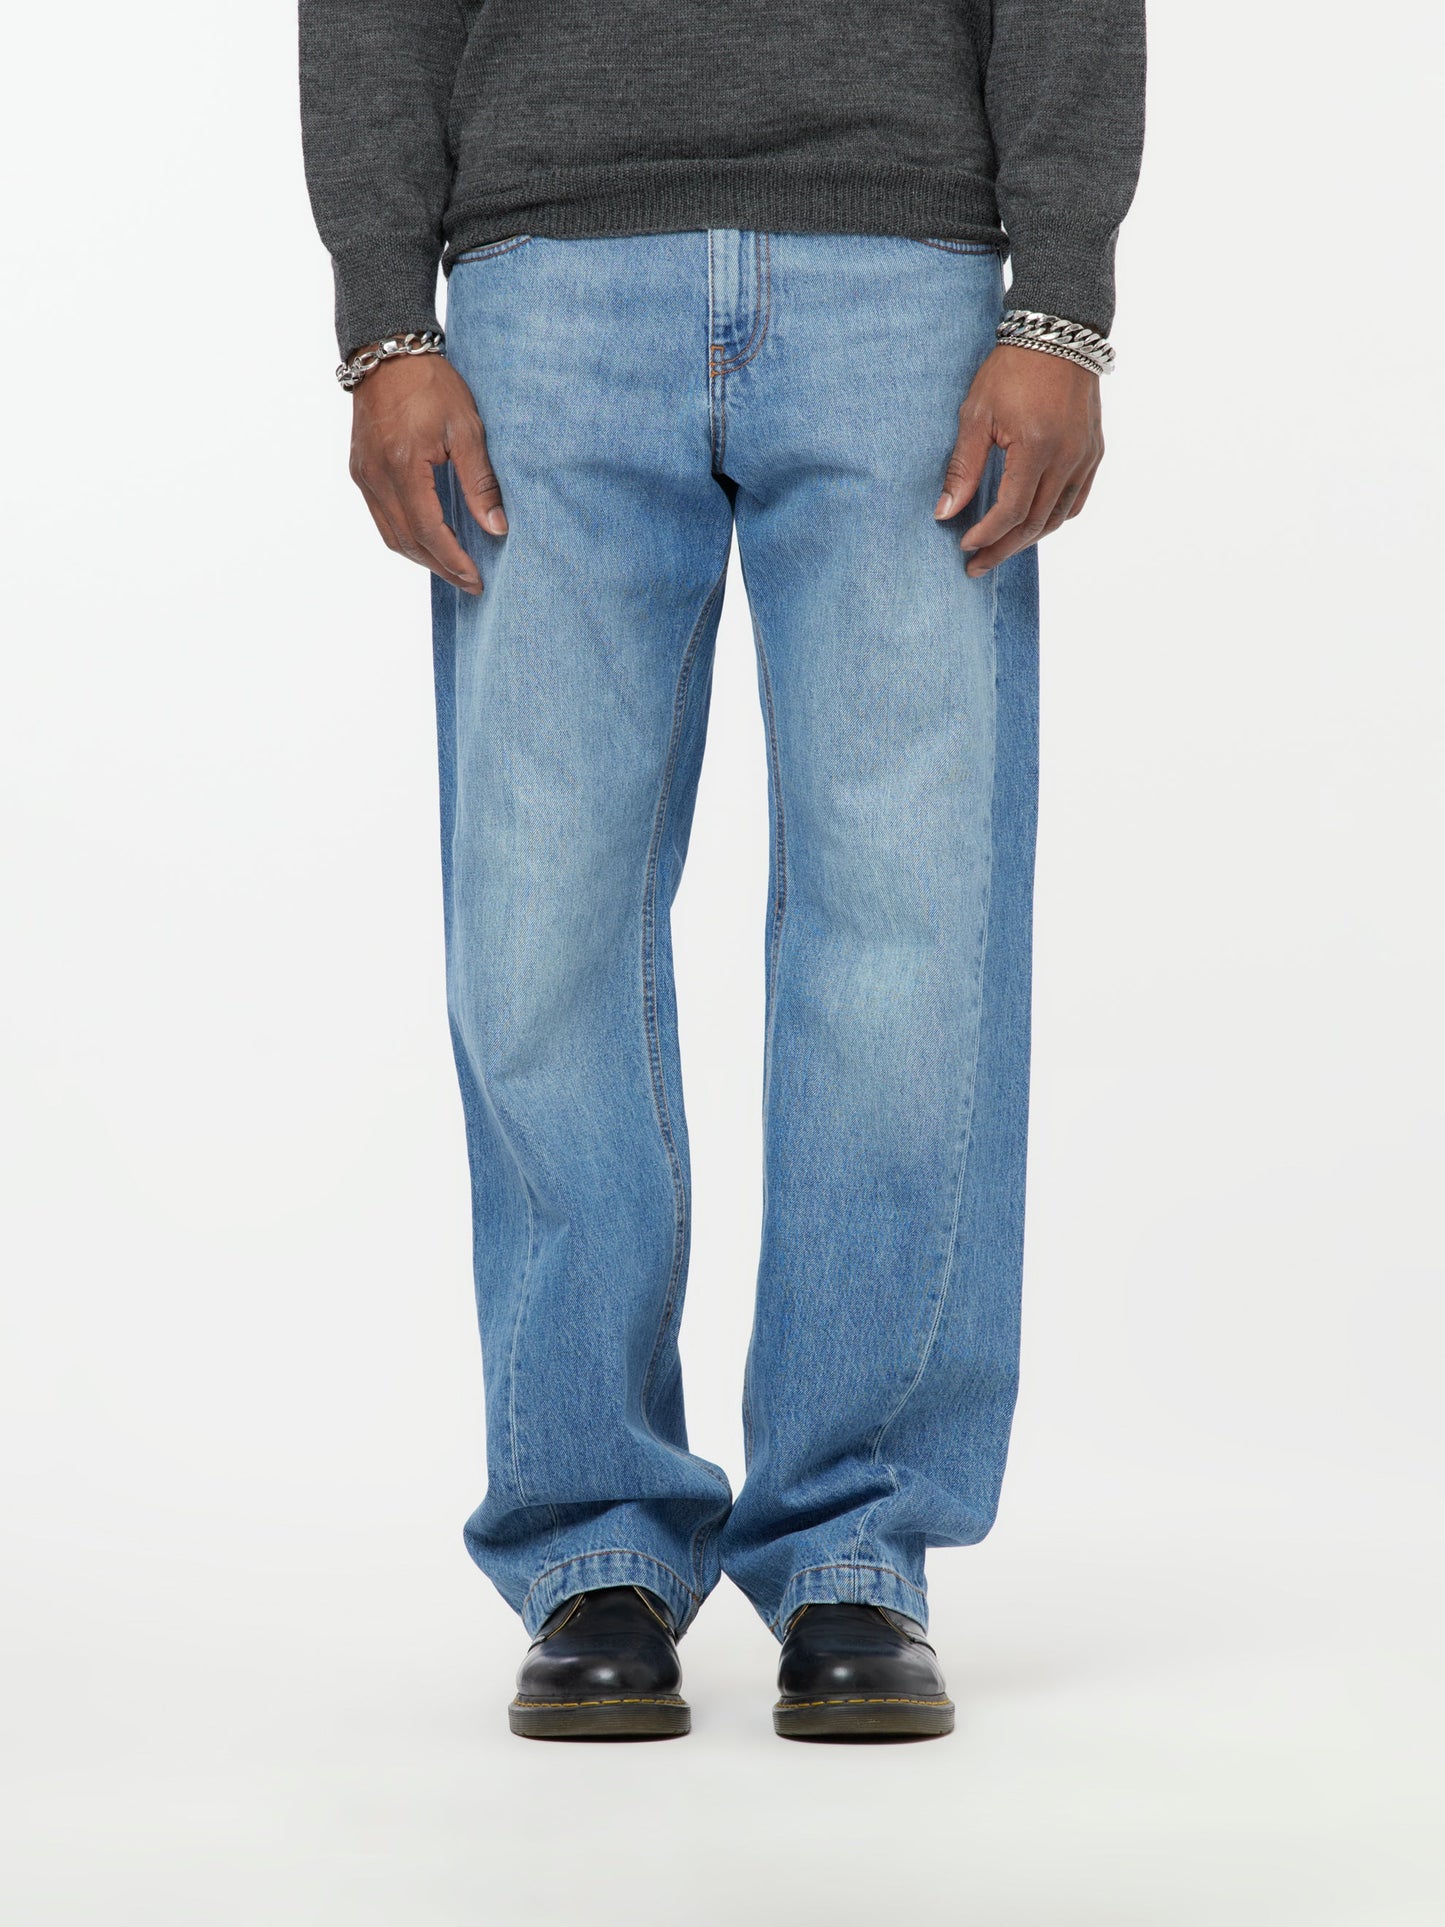 Shift Denim Jeans (Med. Wash)